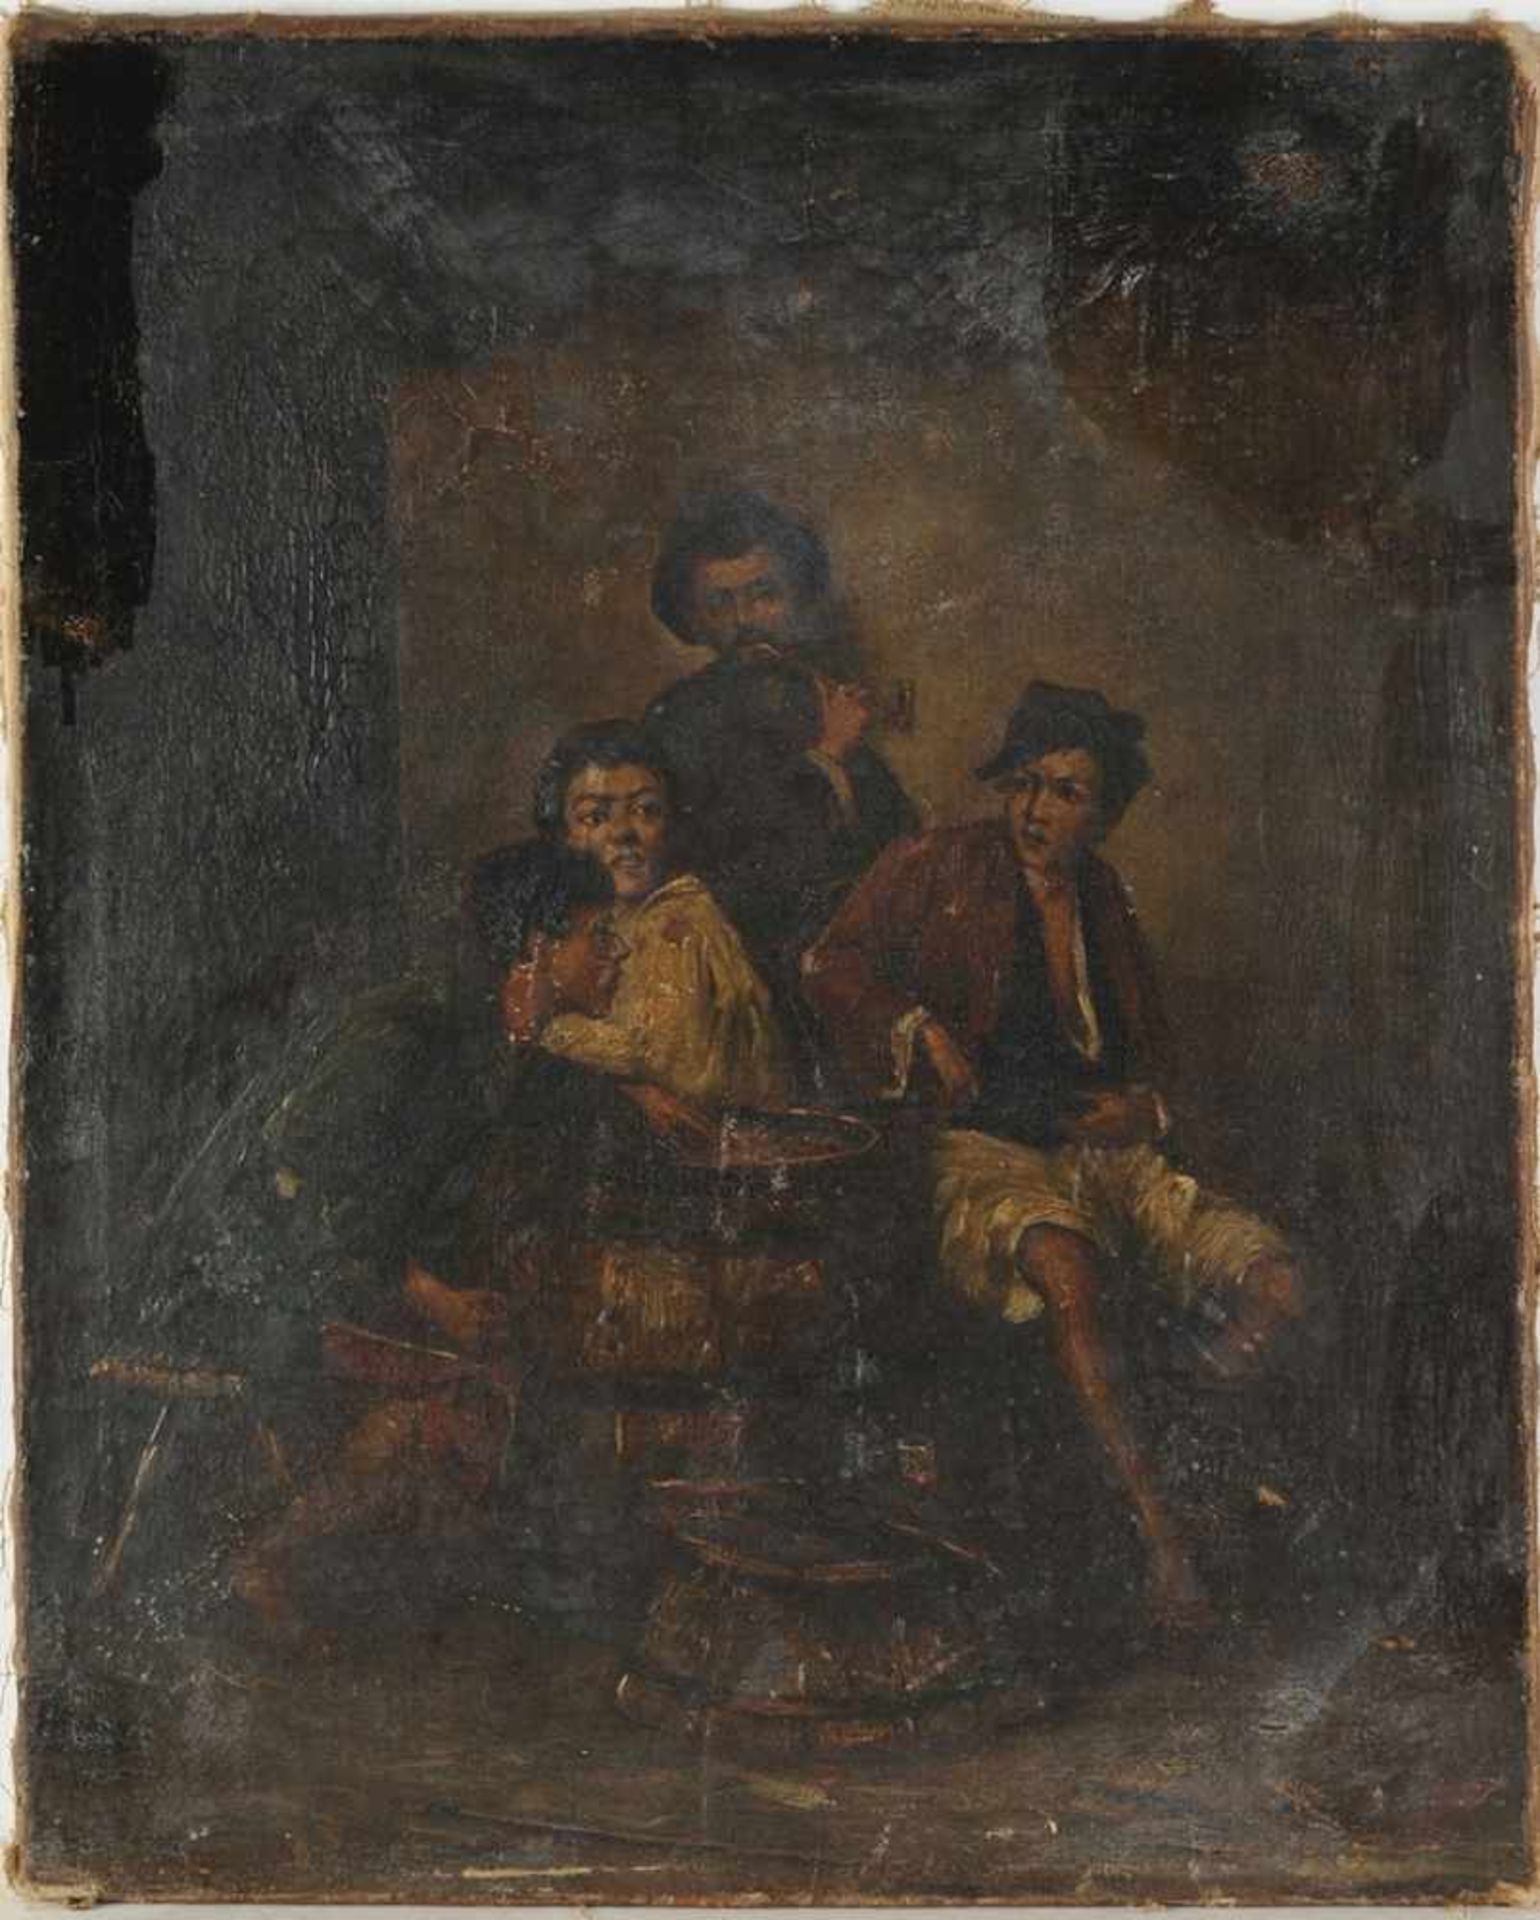 Unbekannt(Spanischer o. italienischer Maler, 18./ A. 19. Jh.) Öl/Lwd. Szene mit Straßenjungengruppe.